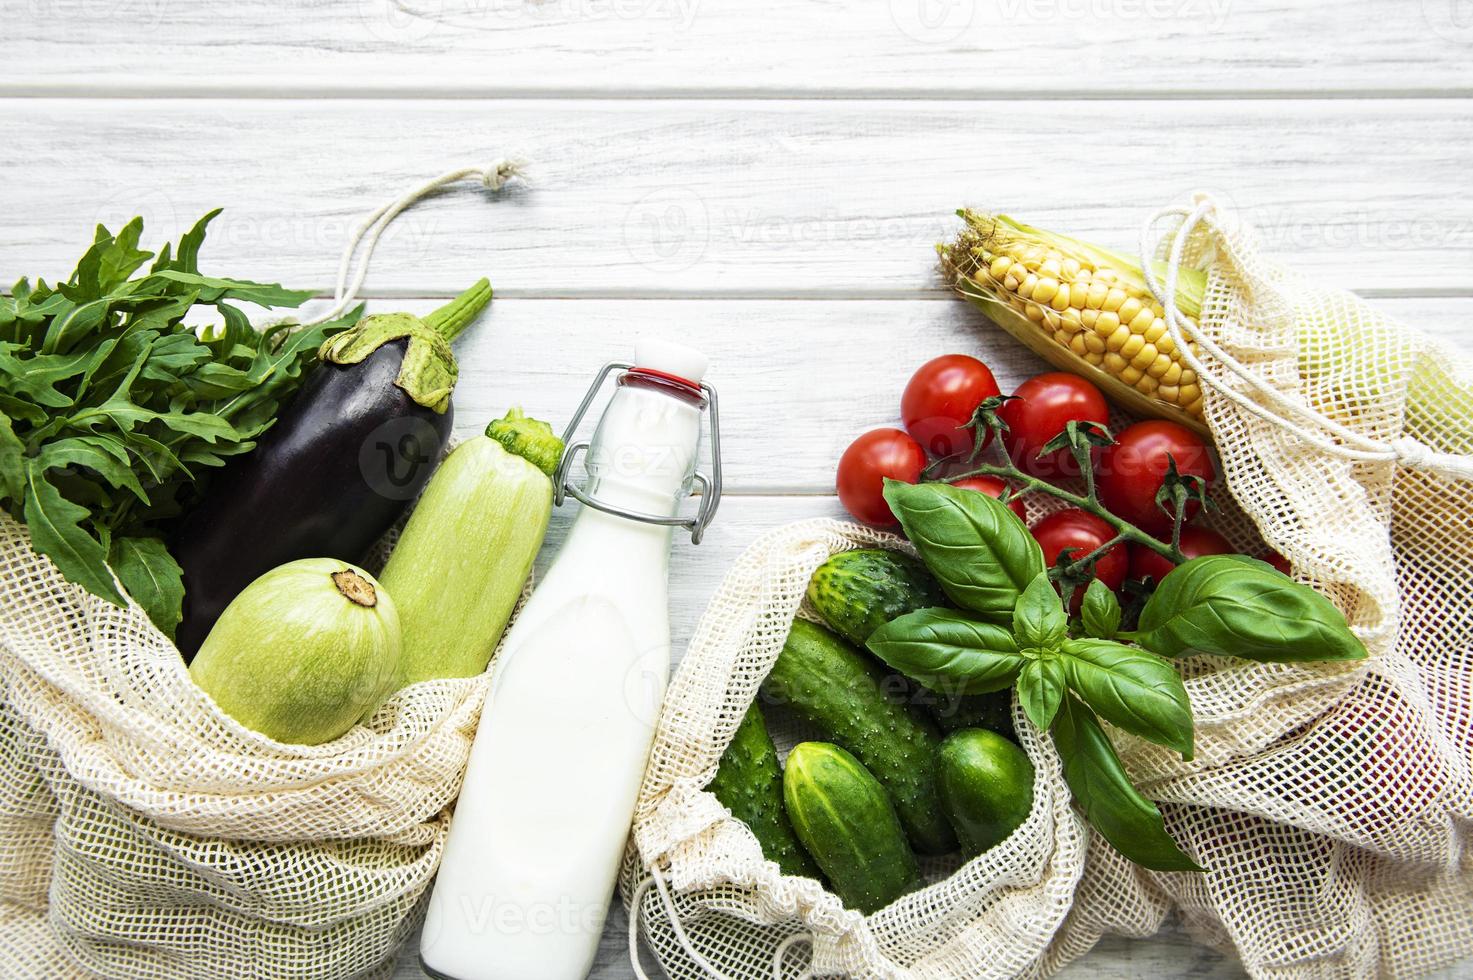 légumes frais dans un sac en coton écologique photo